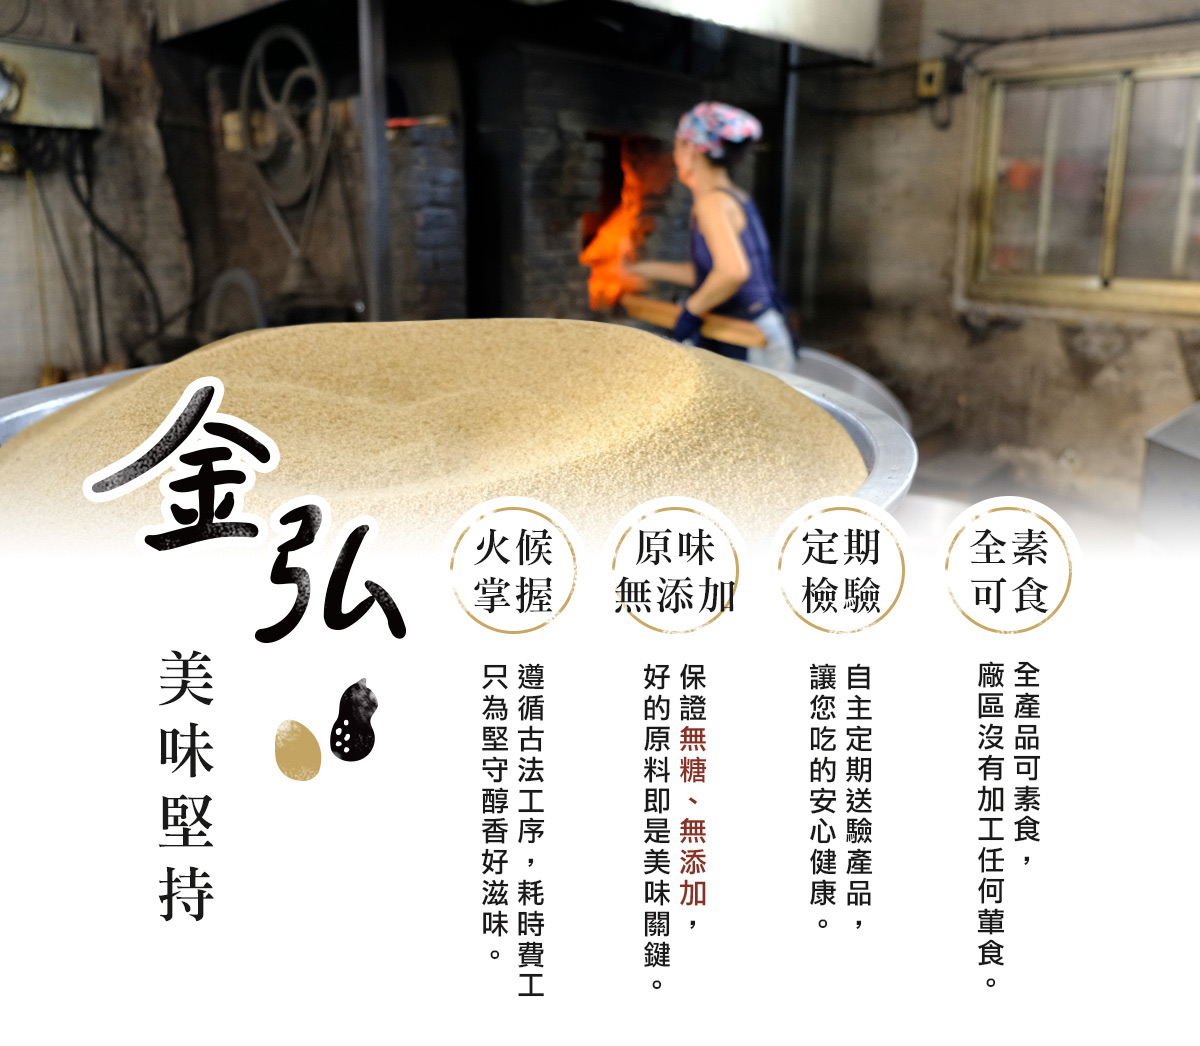 金弘的美味堅持：古法柴燒、原味無添加、定期檢驗、全產品素食可食。